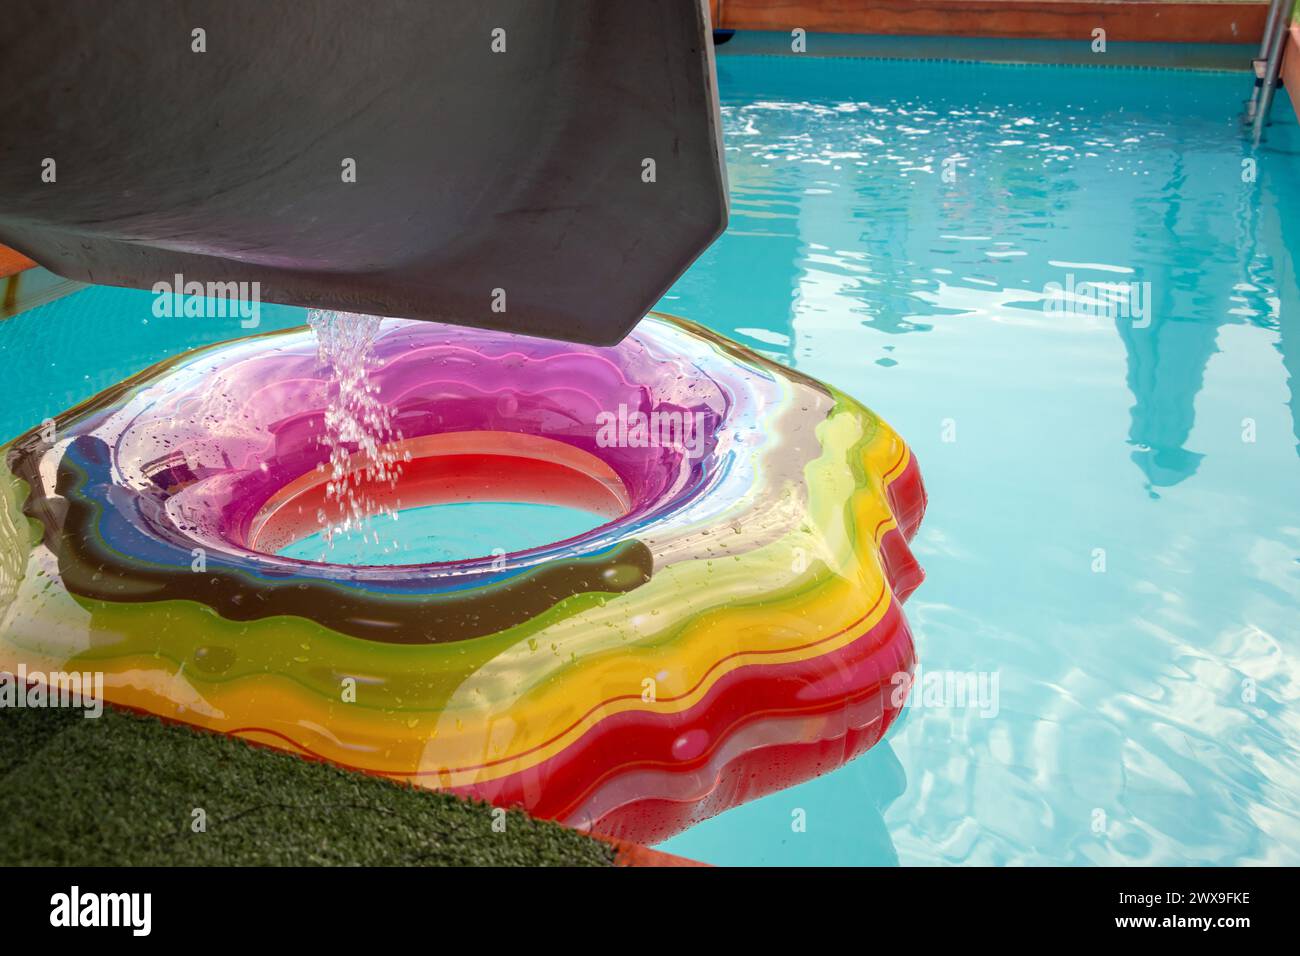 Wasser fließt von einer Rutsche in einen Pool, wo ein bunter aufblasbarer Ring schwimmt. Abends in einem leeren Swimmingpool Stockfoto